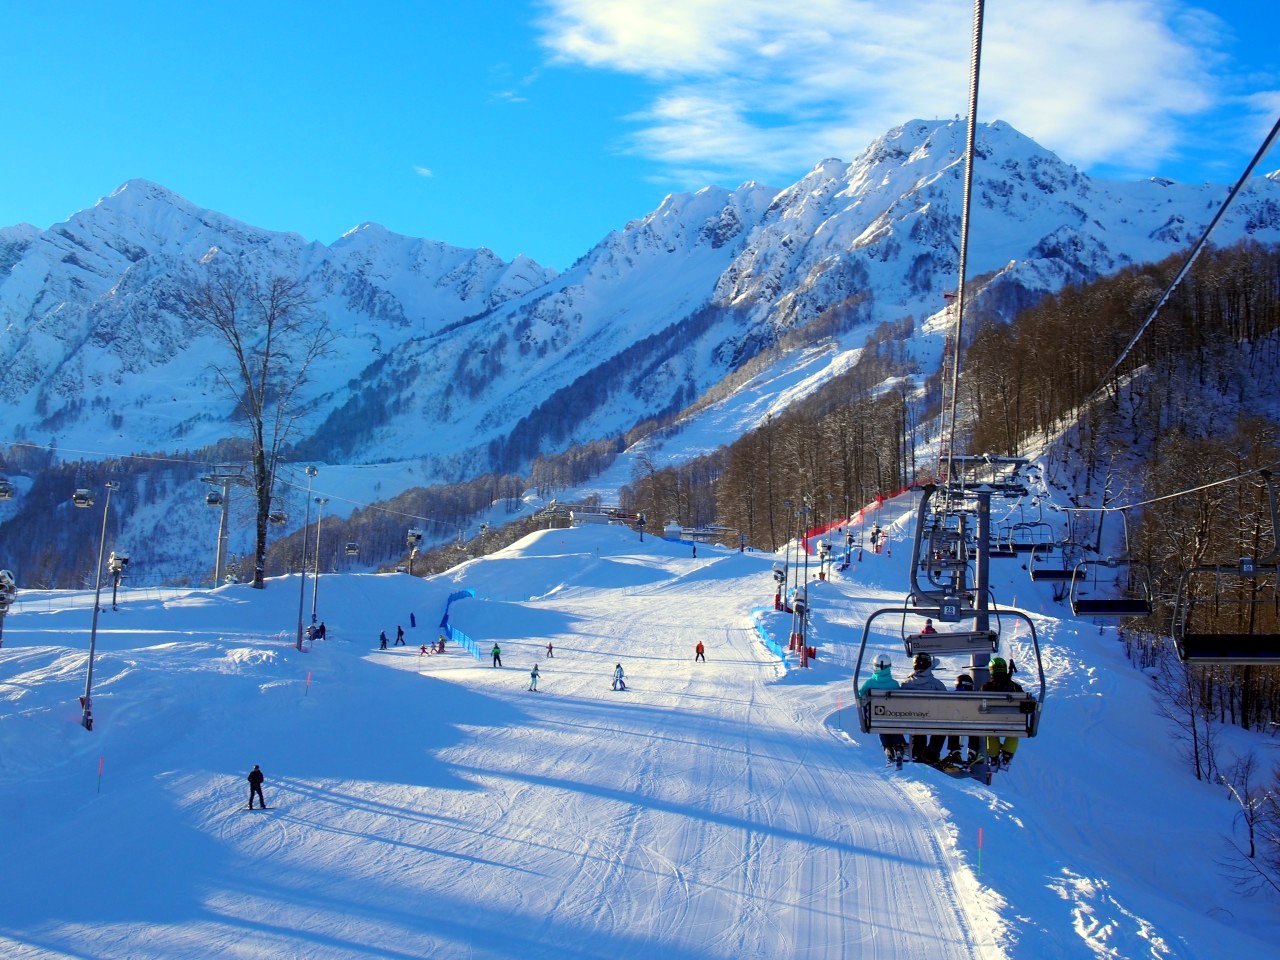 Курорт Роза Хутор принял почти миллион горнолыжников в зимнем сезоне